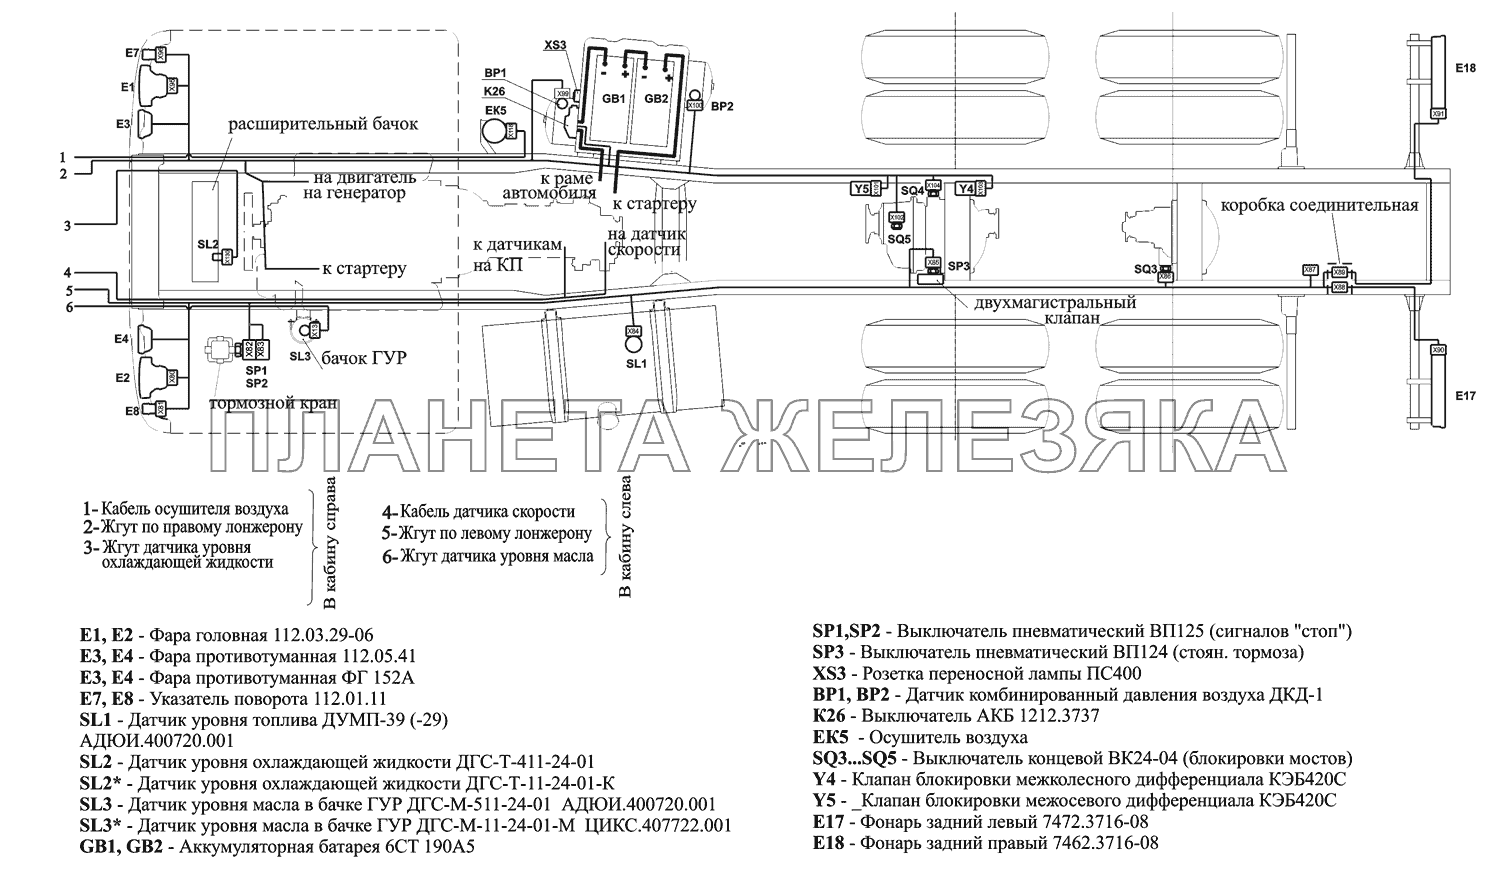 Расположение разъемов и элементов электрооборудования на шасси МАЗ-630333